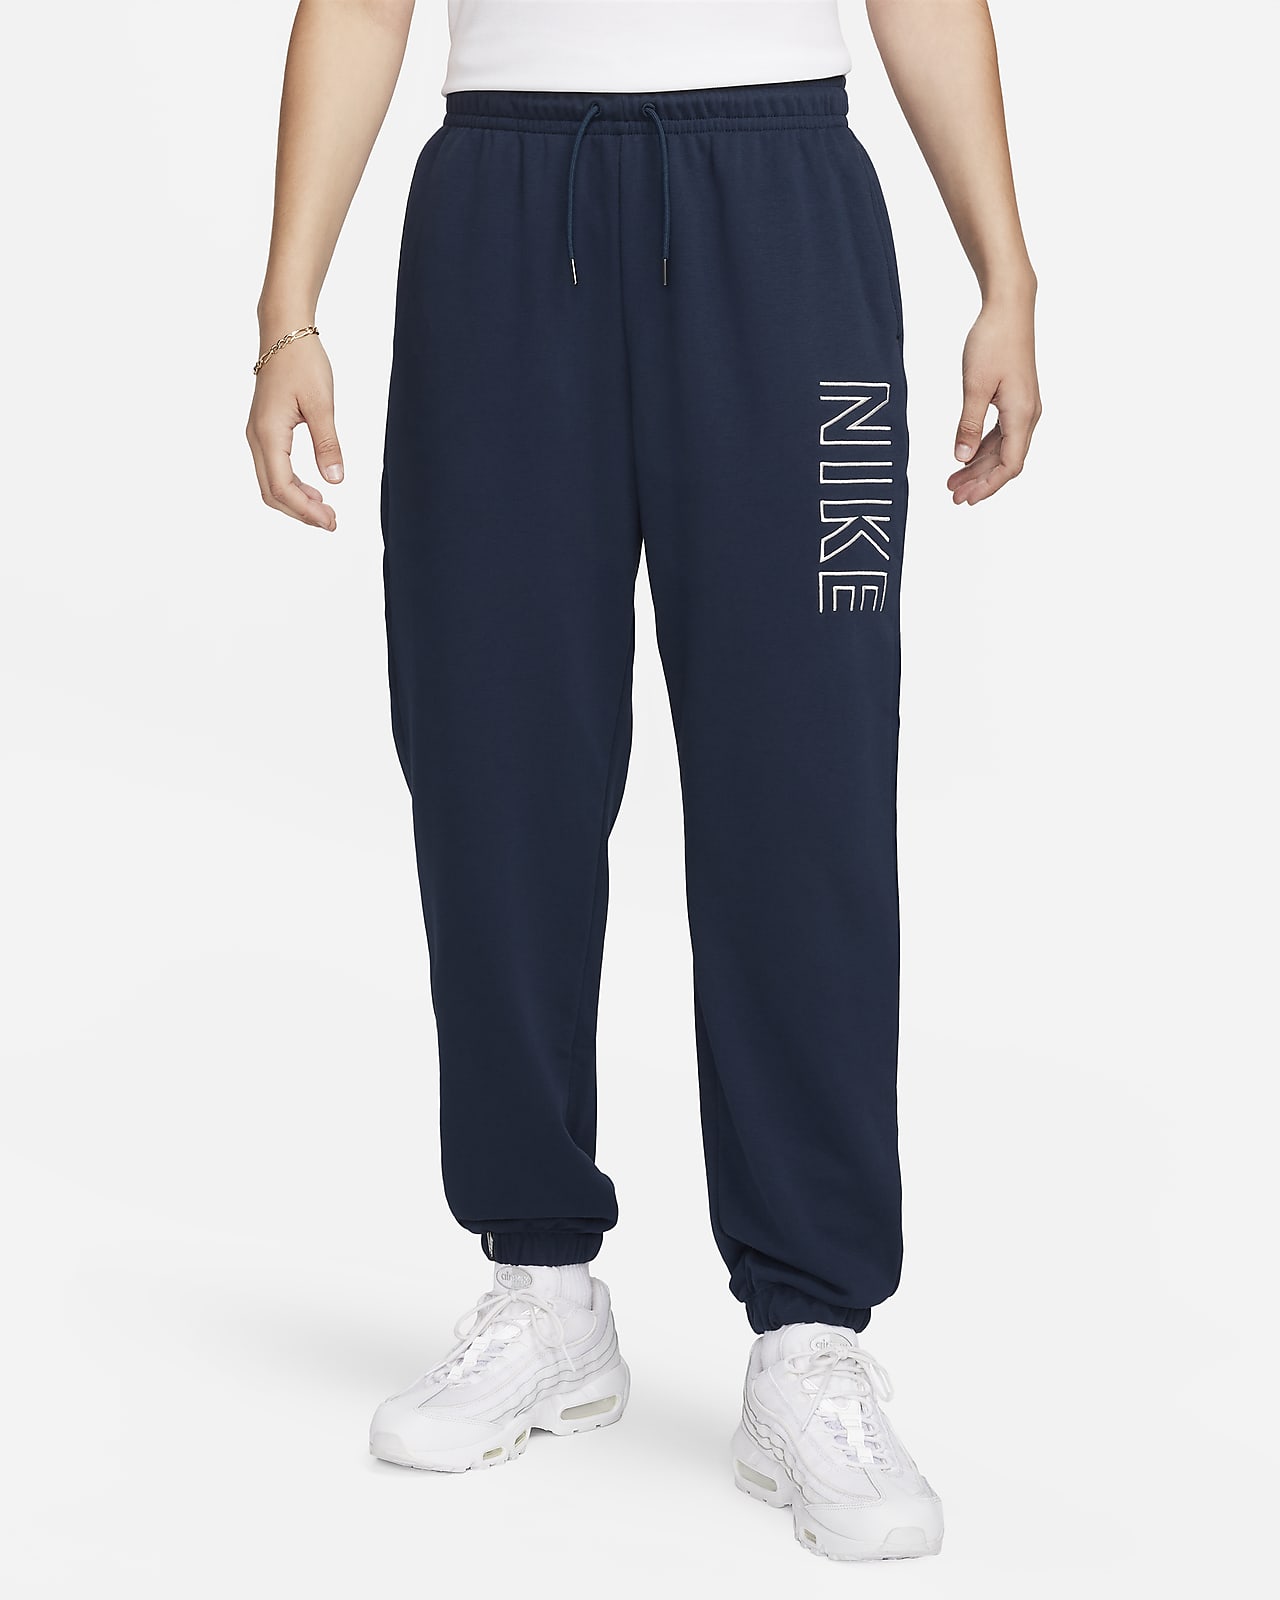 Pants cargo de tejido Woven holgados de tiro alto para mujer Nike Sportswear